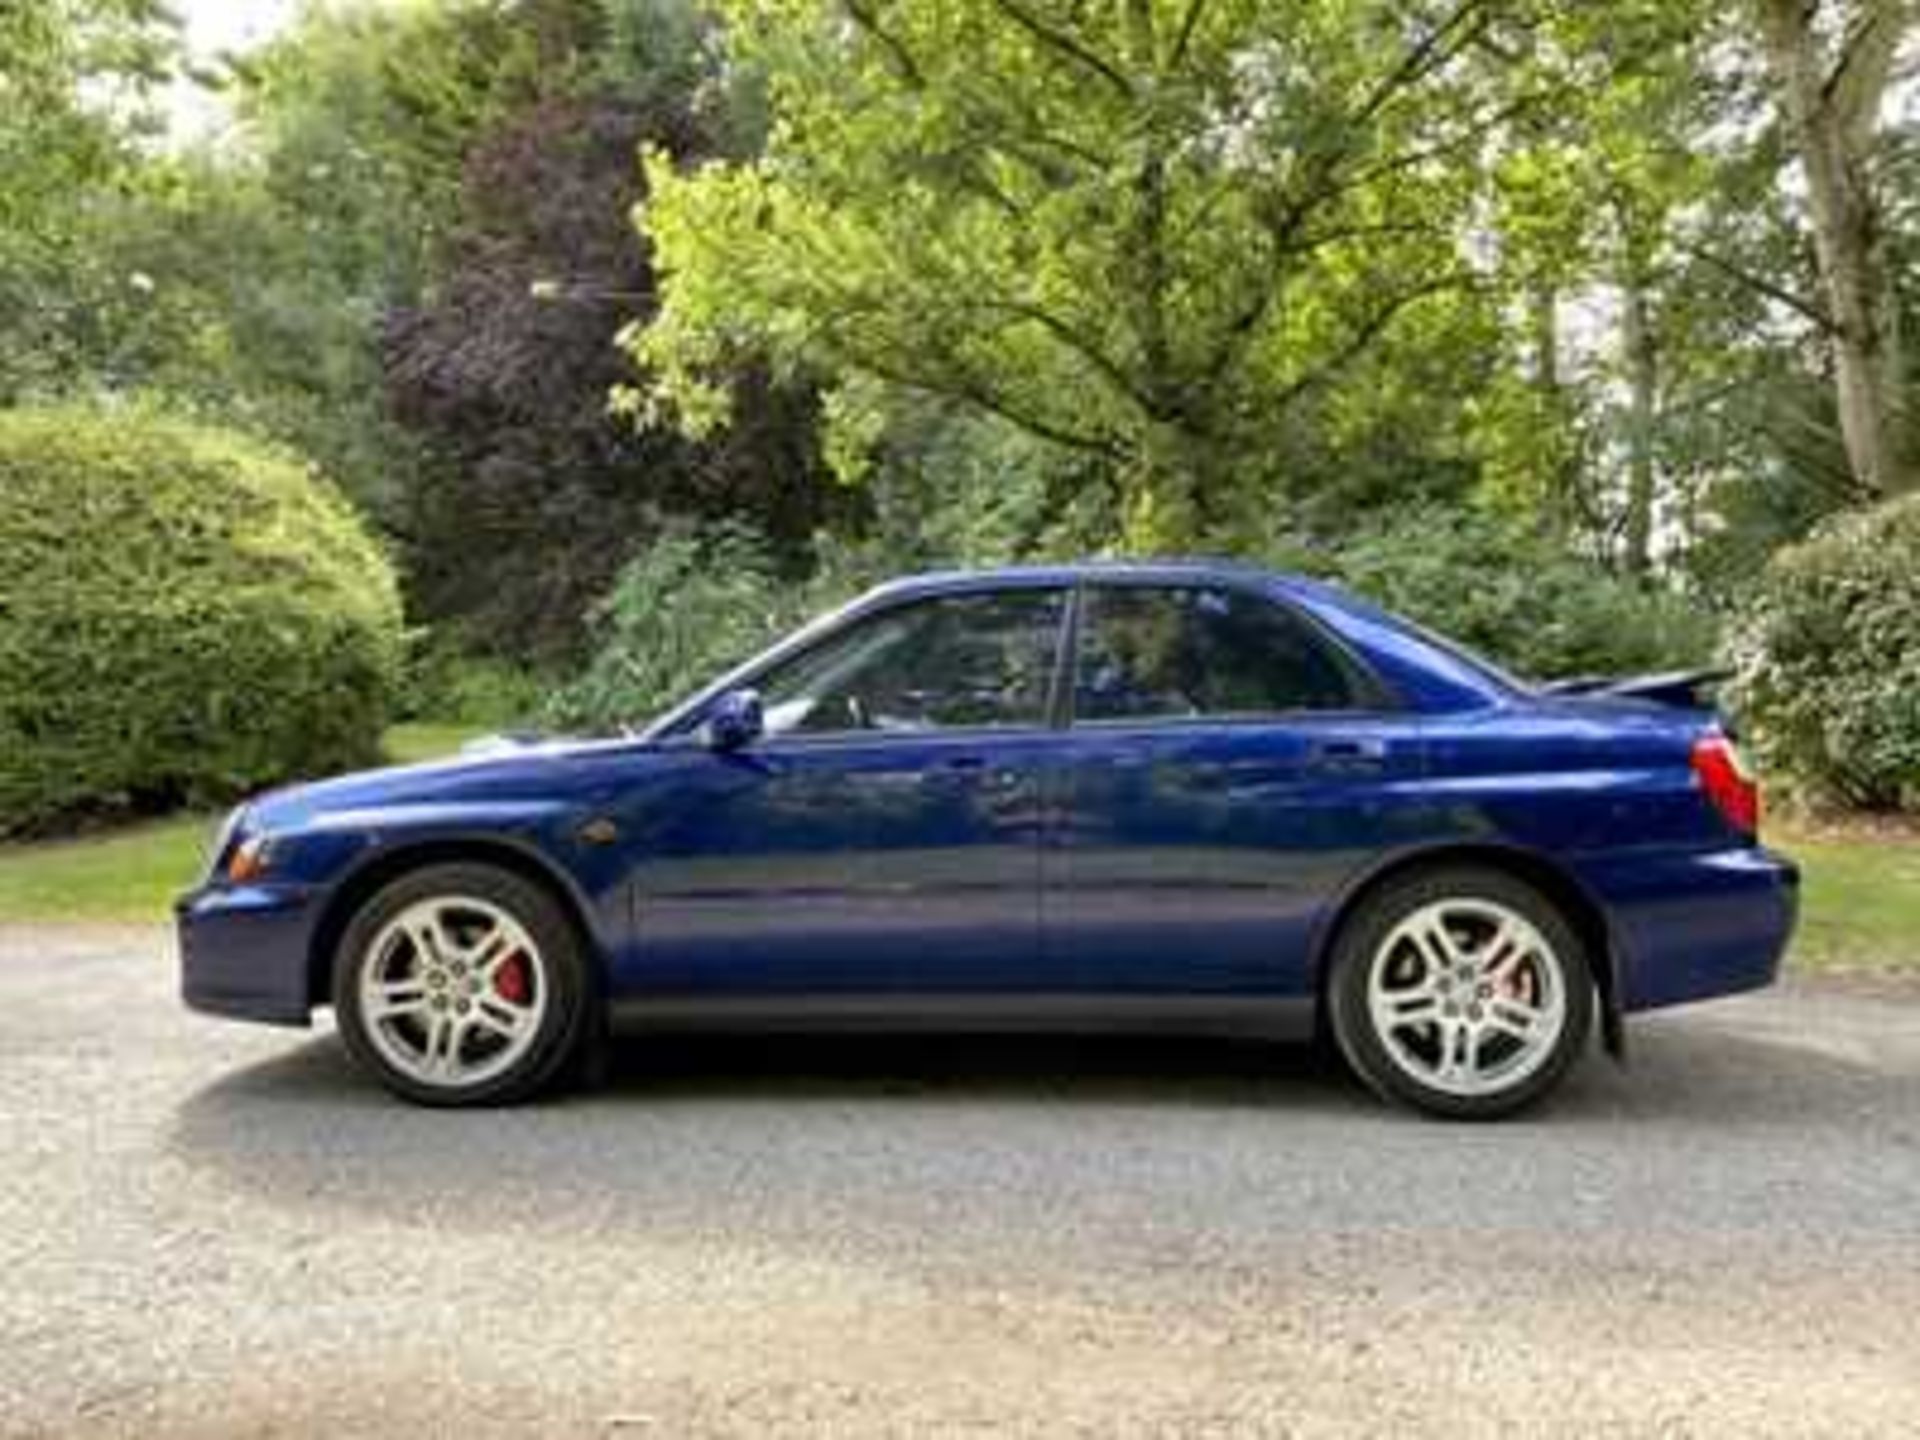 2001 Subaru Impreza WRX Superb throughout and unmolested - Image 5 of 10